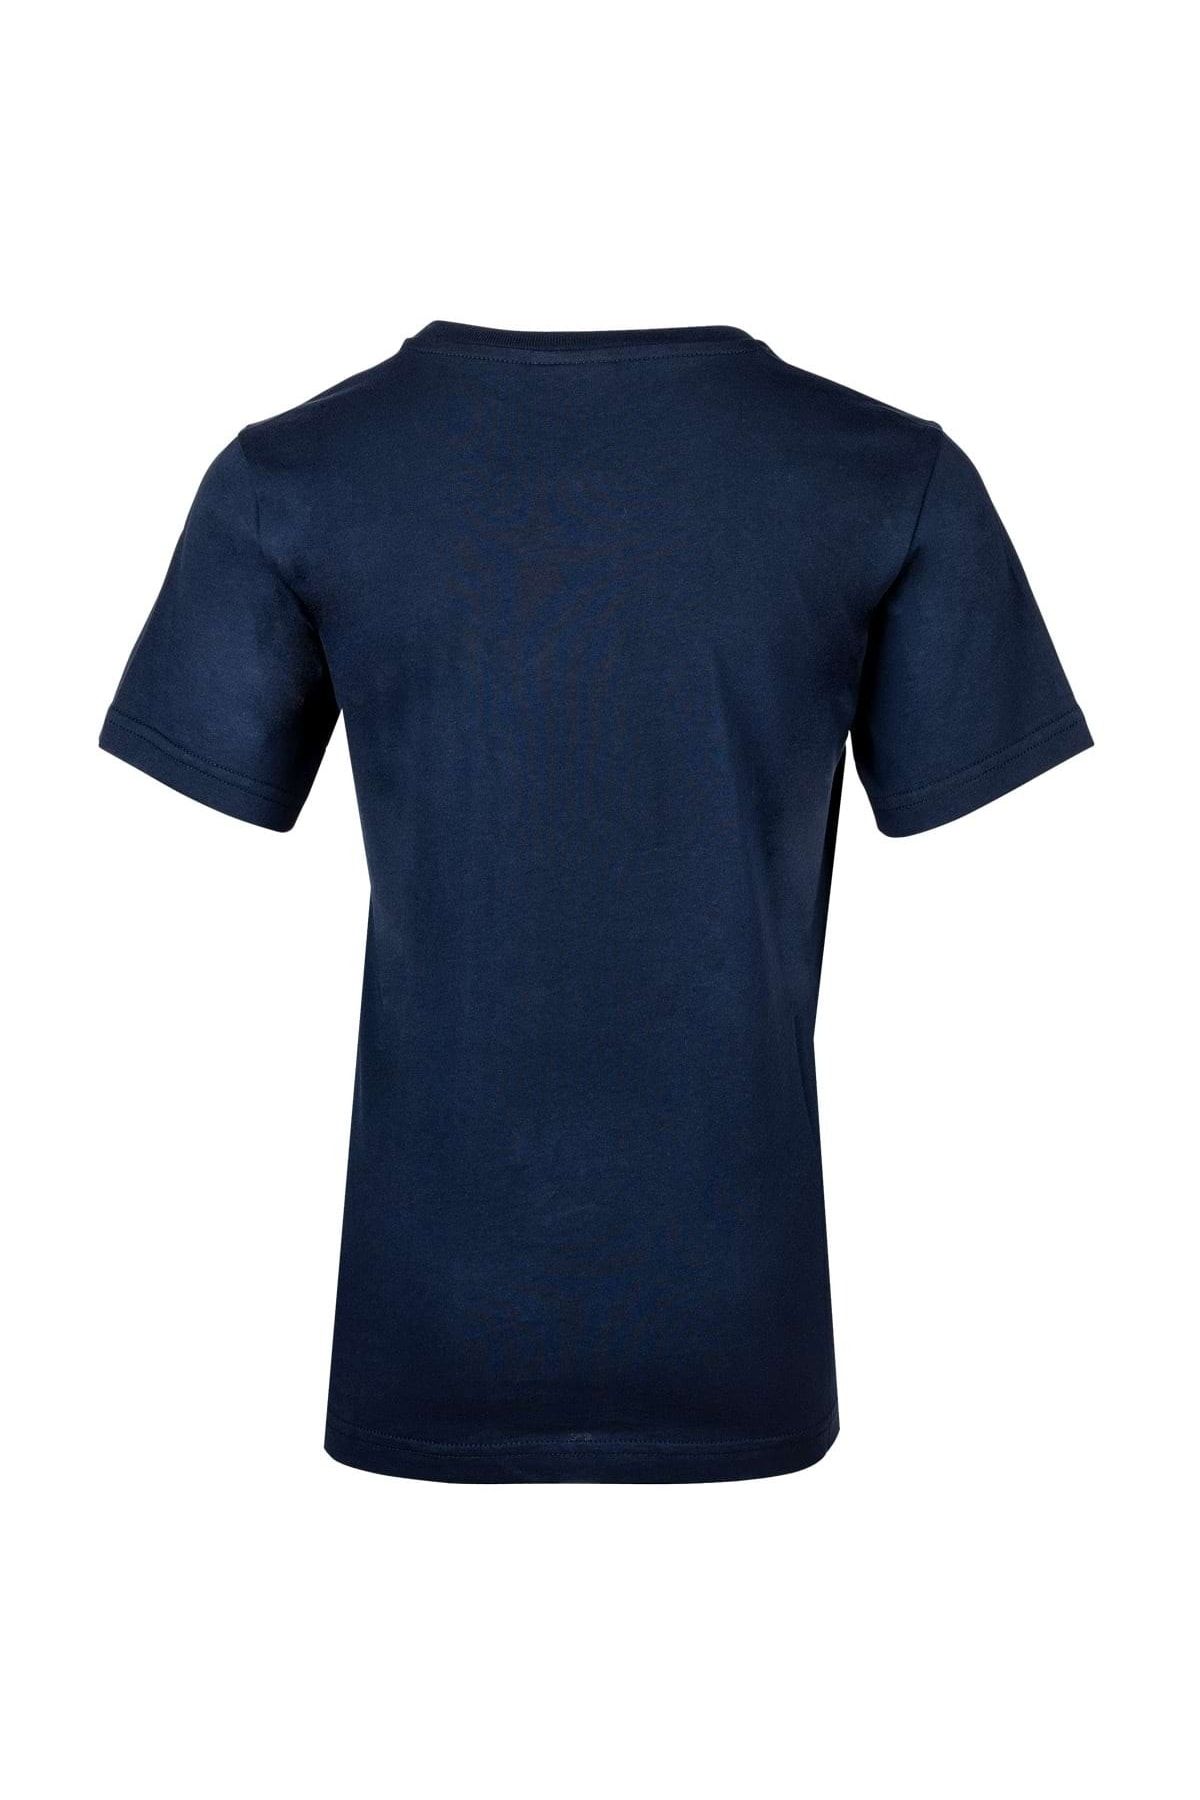 T-Shirt - Trendyol - Kinder Crewneck, Logo, großes Champion Unisex Baumwolle, einfarbig Rundhals,